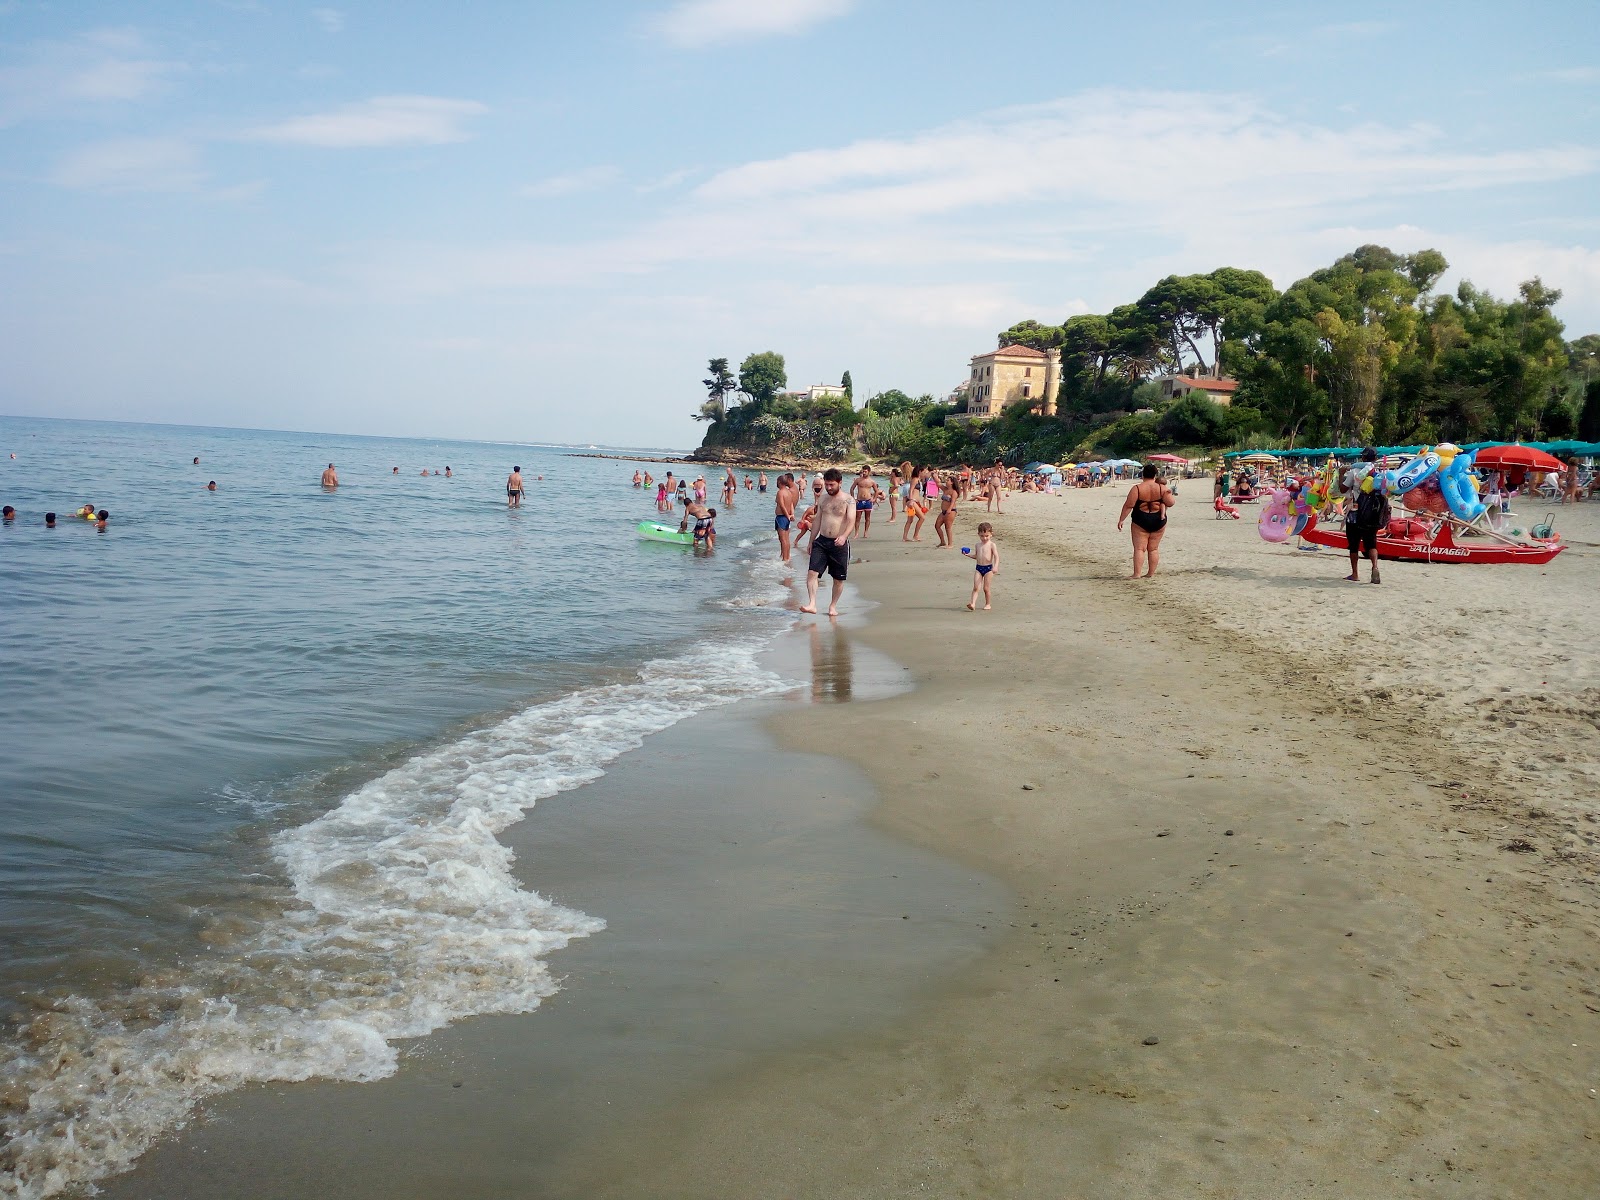 Agropoli Plajları'in fotoğrafı geniş plaj ile birlikte